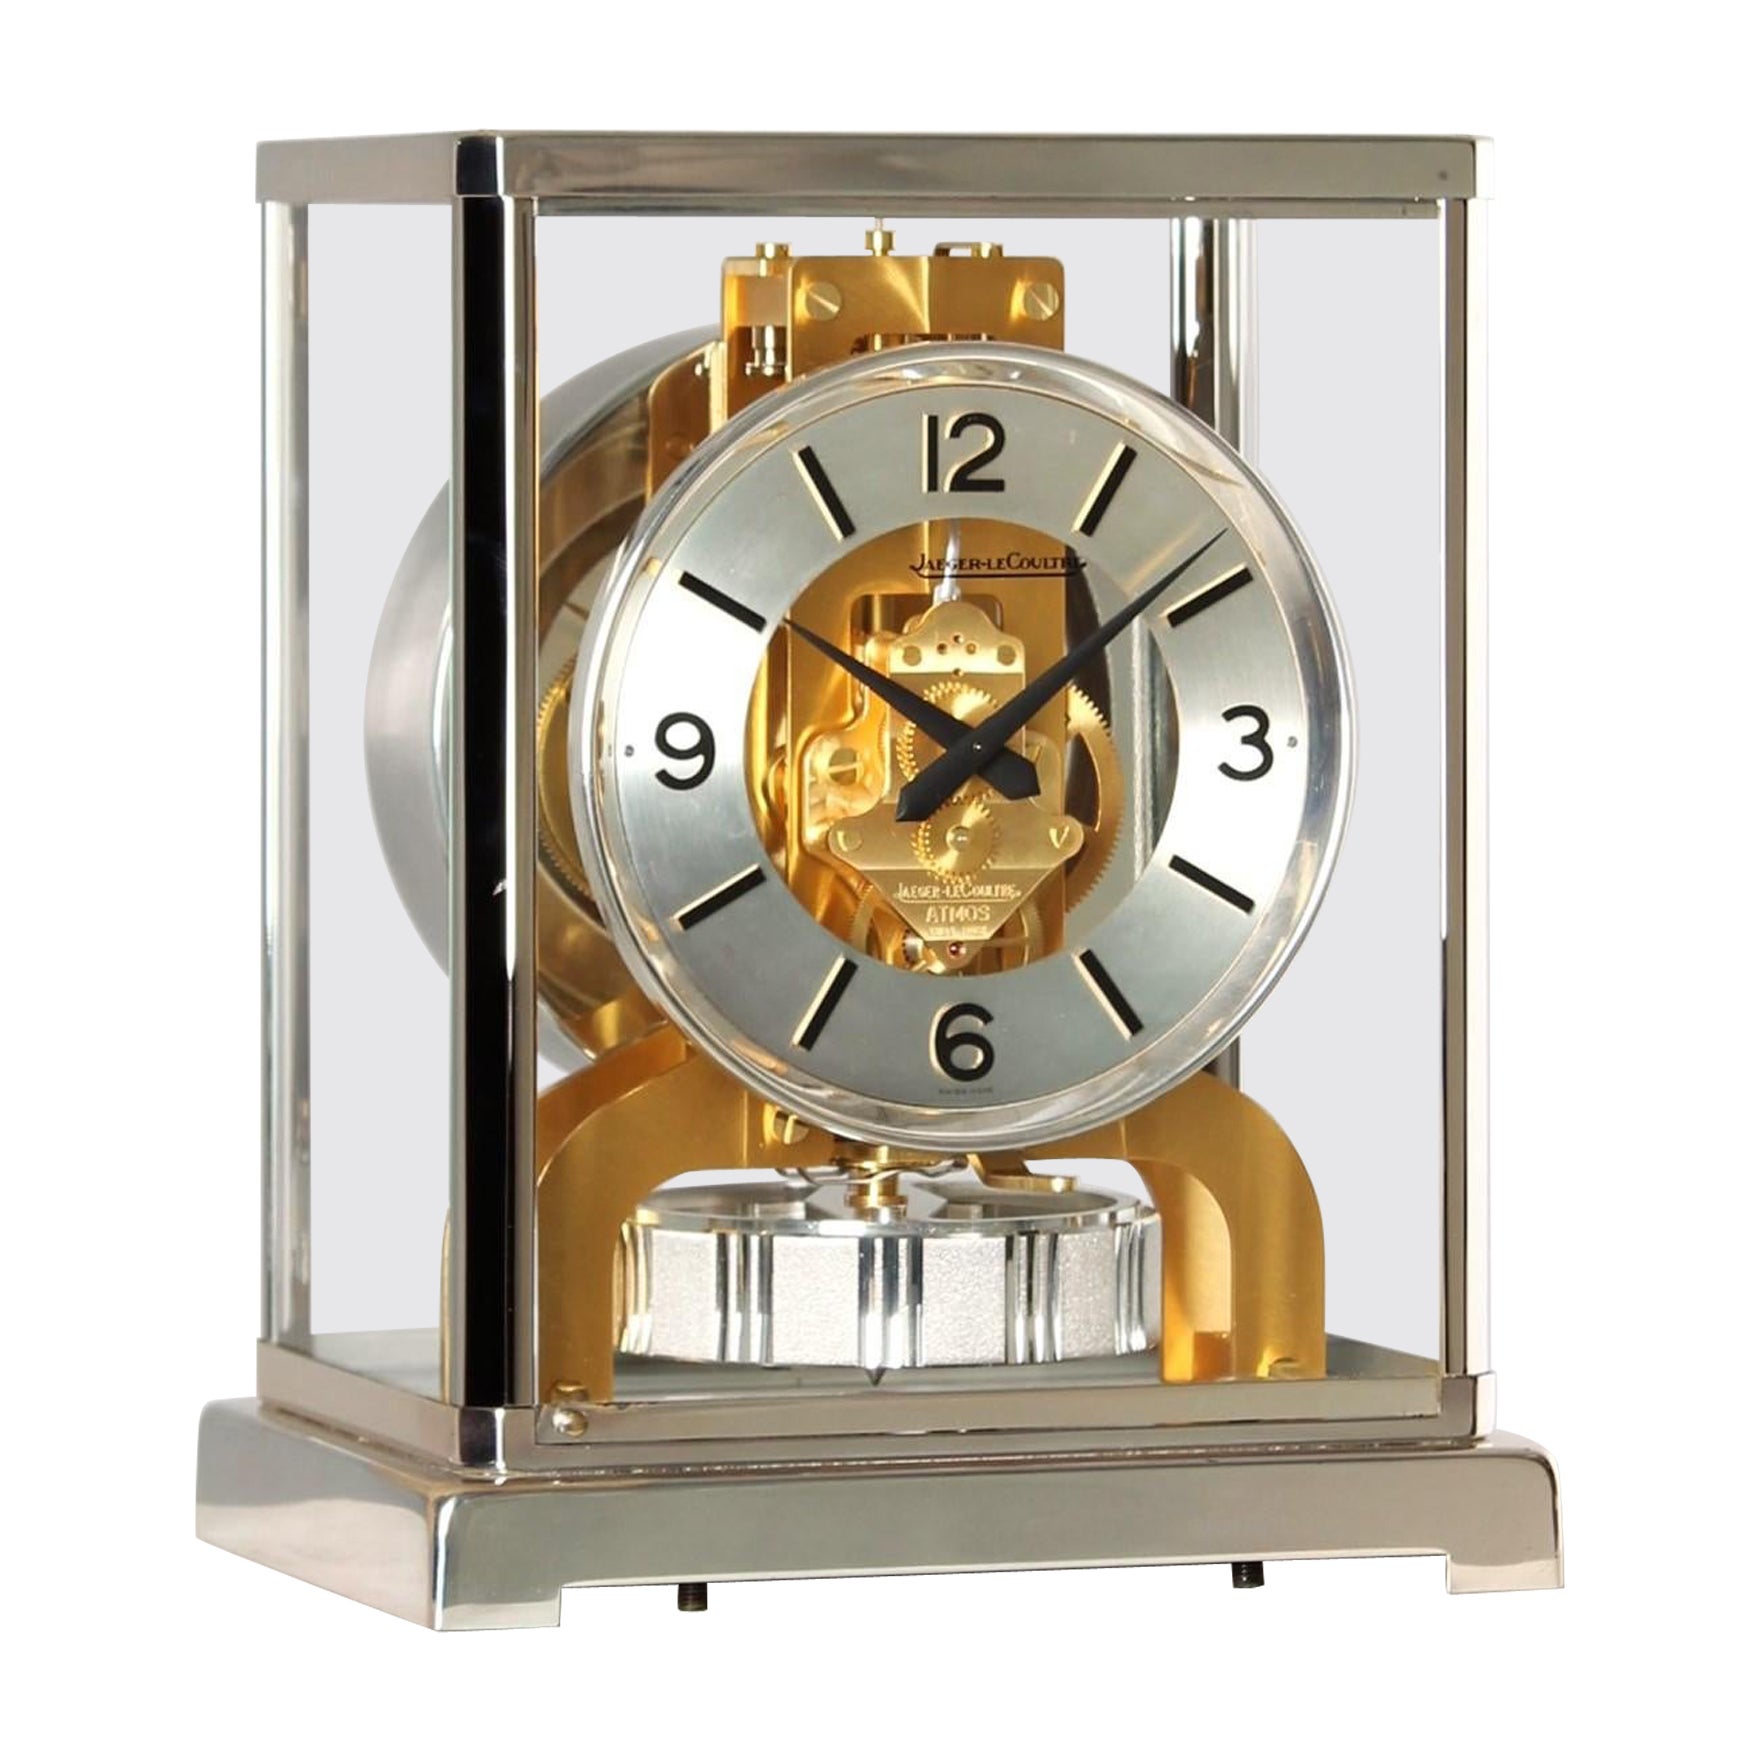 Jaeger LeCoultre, horloge Atmos bicolore, argent et or, fabriquée en 1978